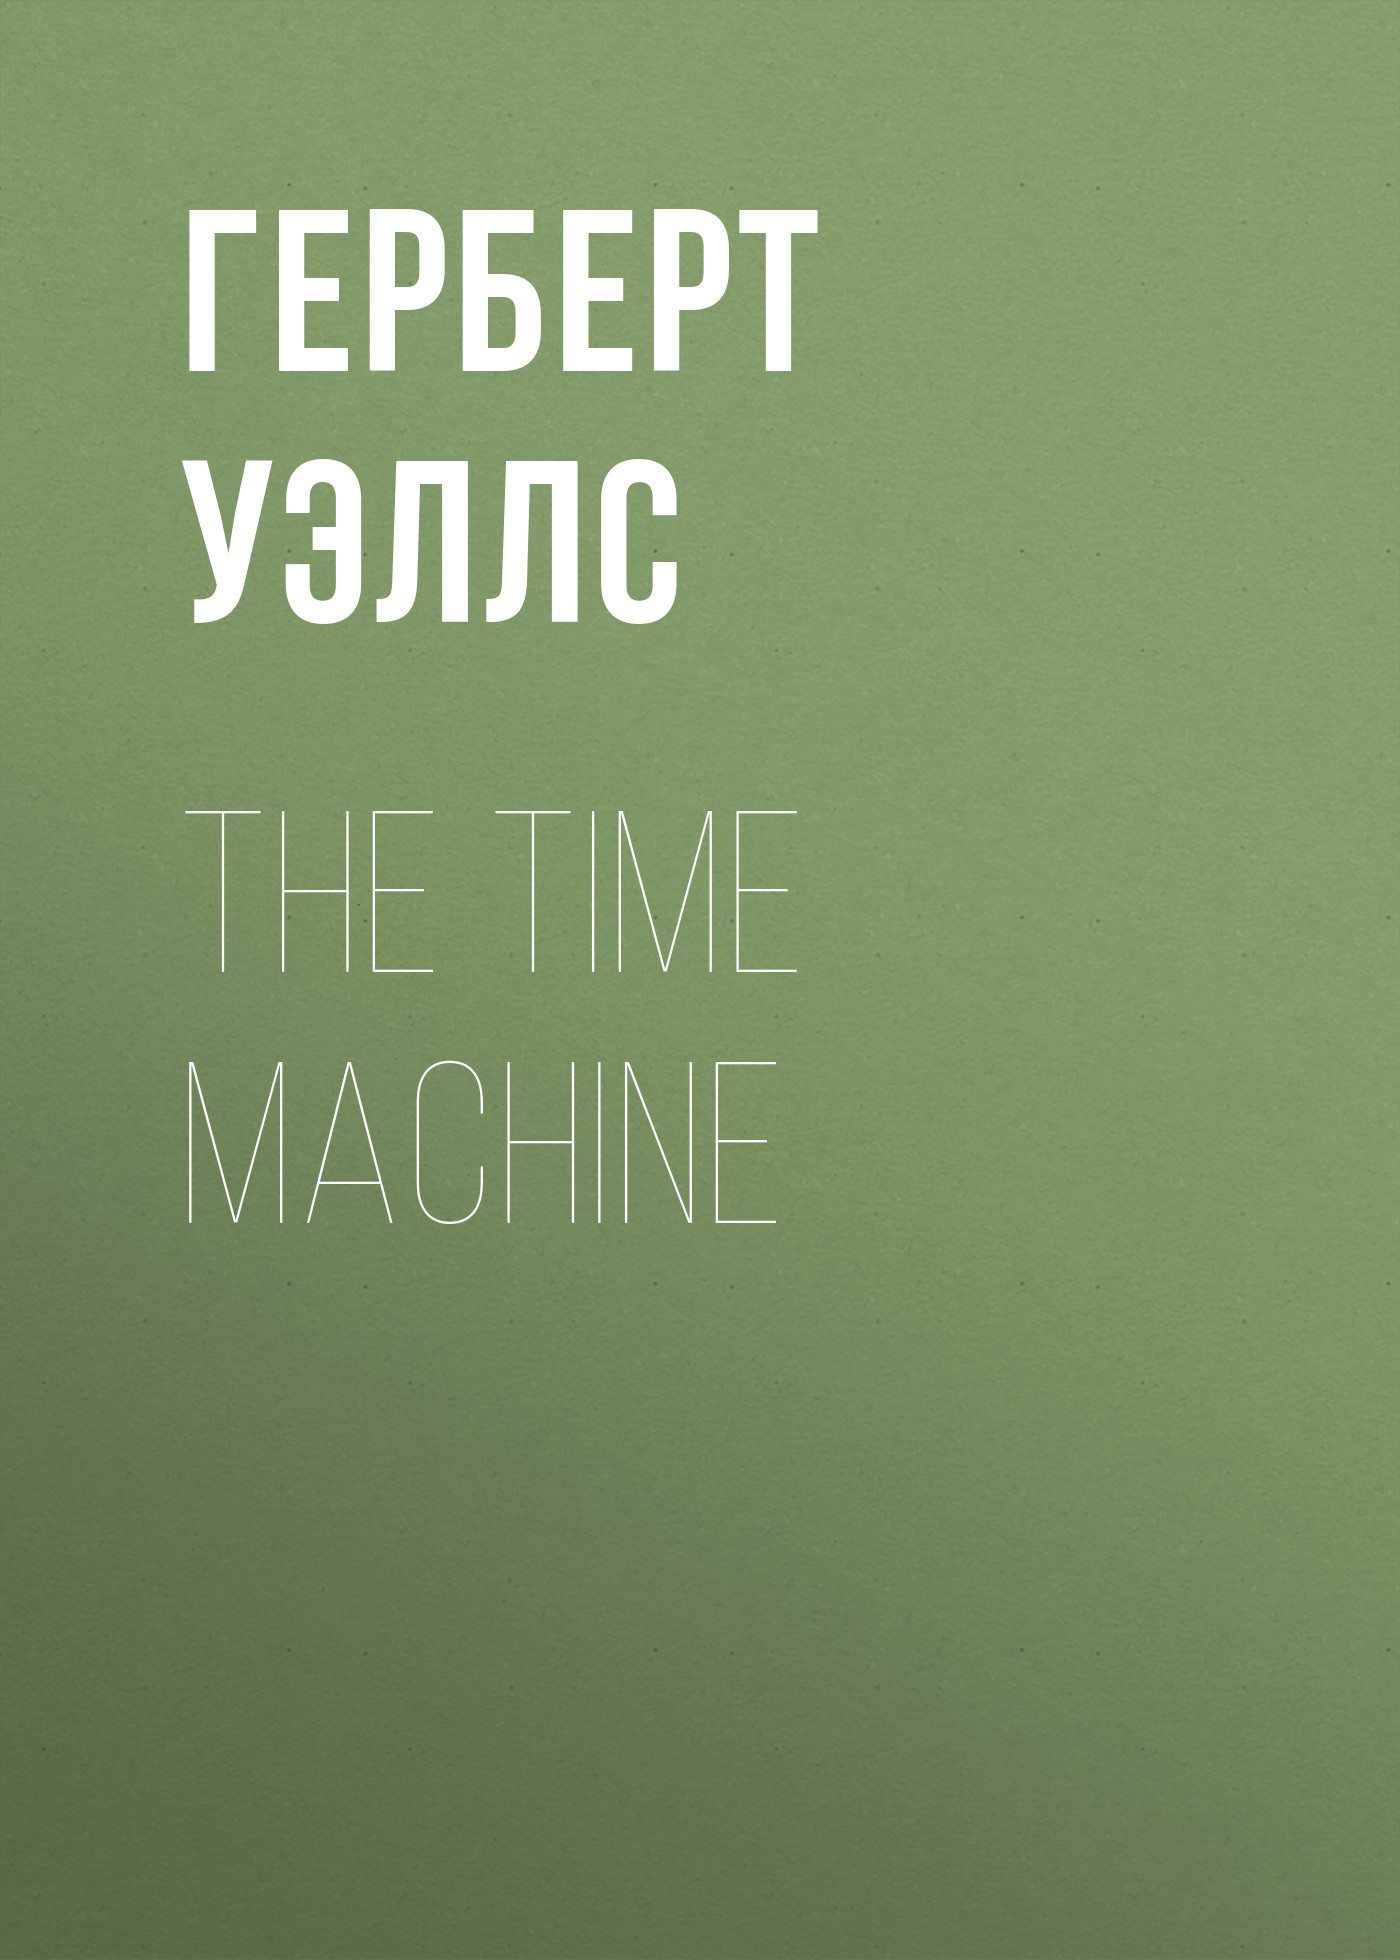 Книга The Time Machine из серии , созданная Герберт Уэллс, может относится к жанру Зарубежная классика, Научная фантастика, Иностранные языки. Стоимость электронной книги The Time Machine с идентификатором 24434358 составляет 0.90 руб.